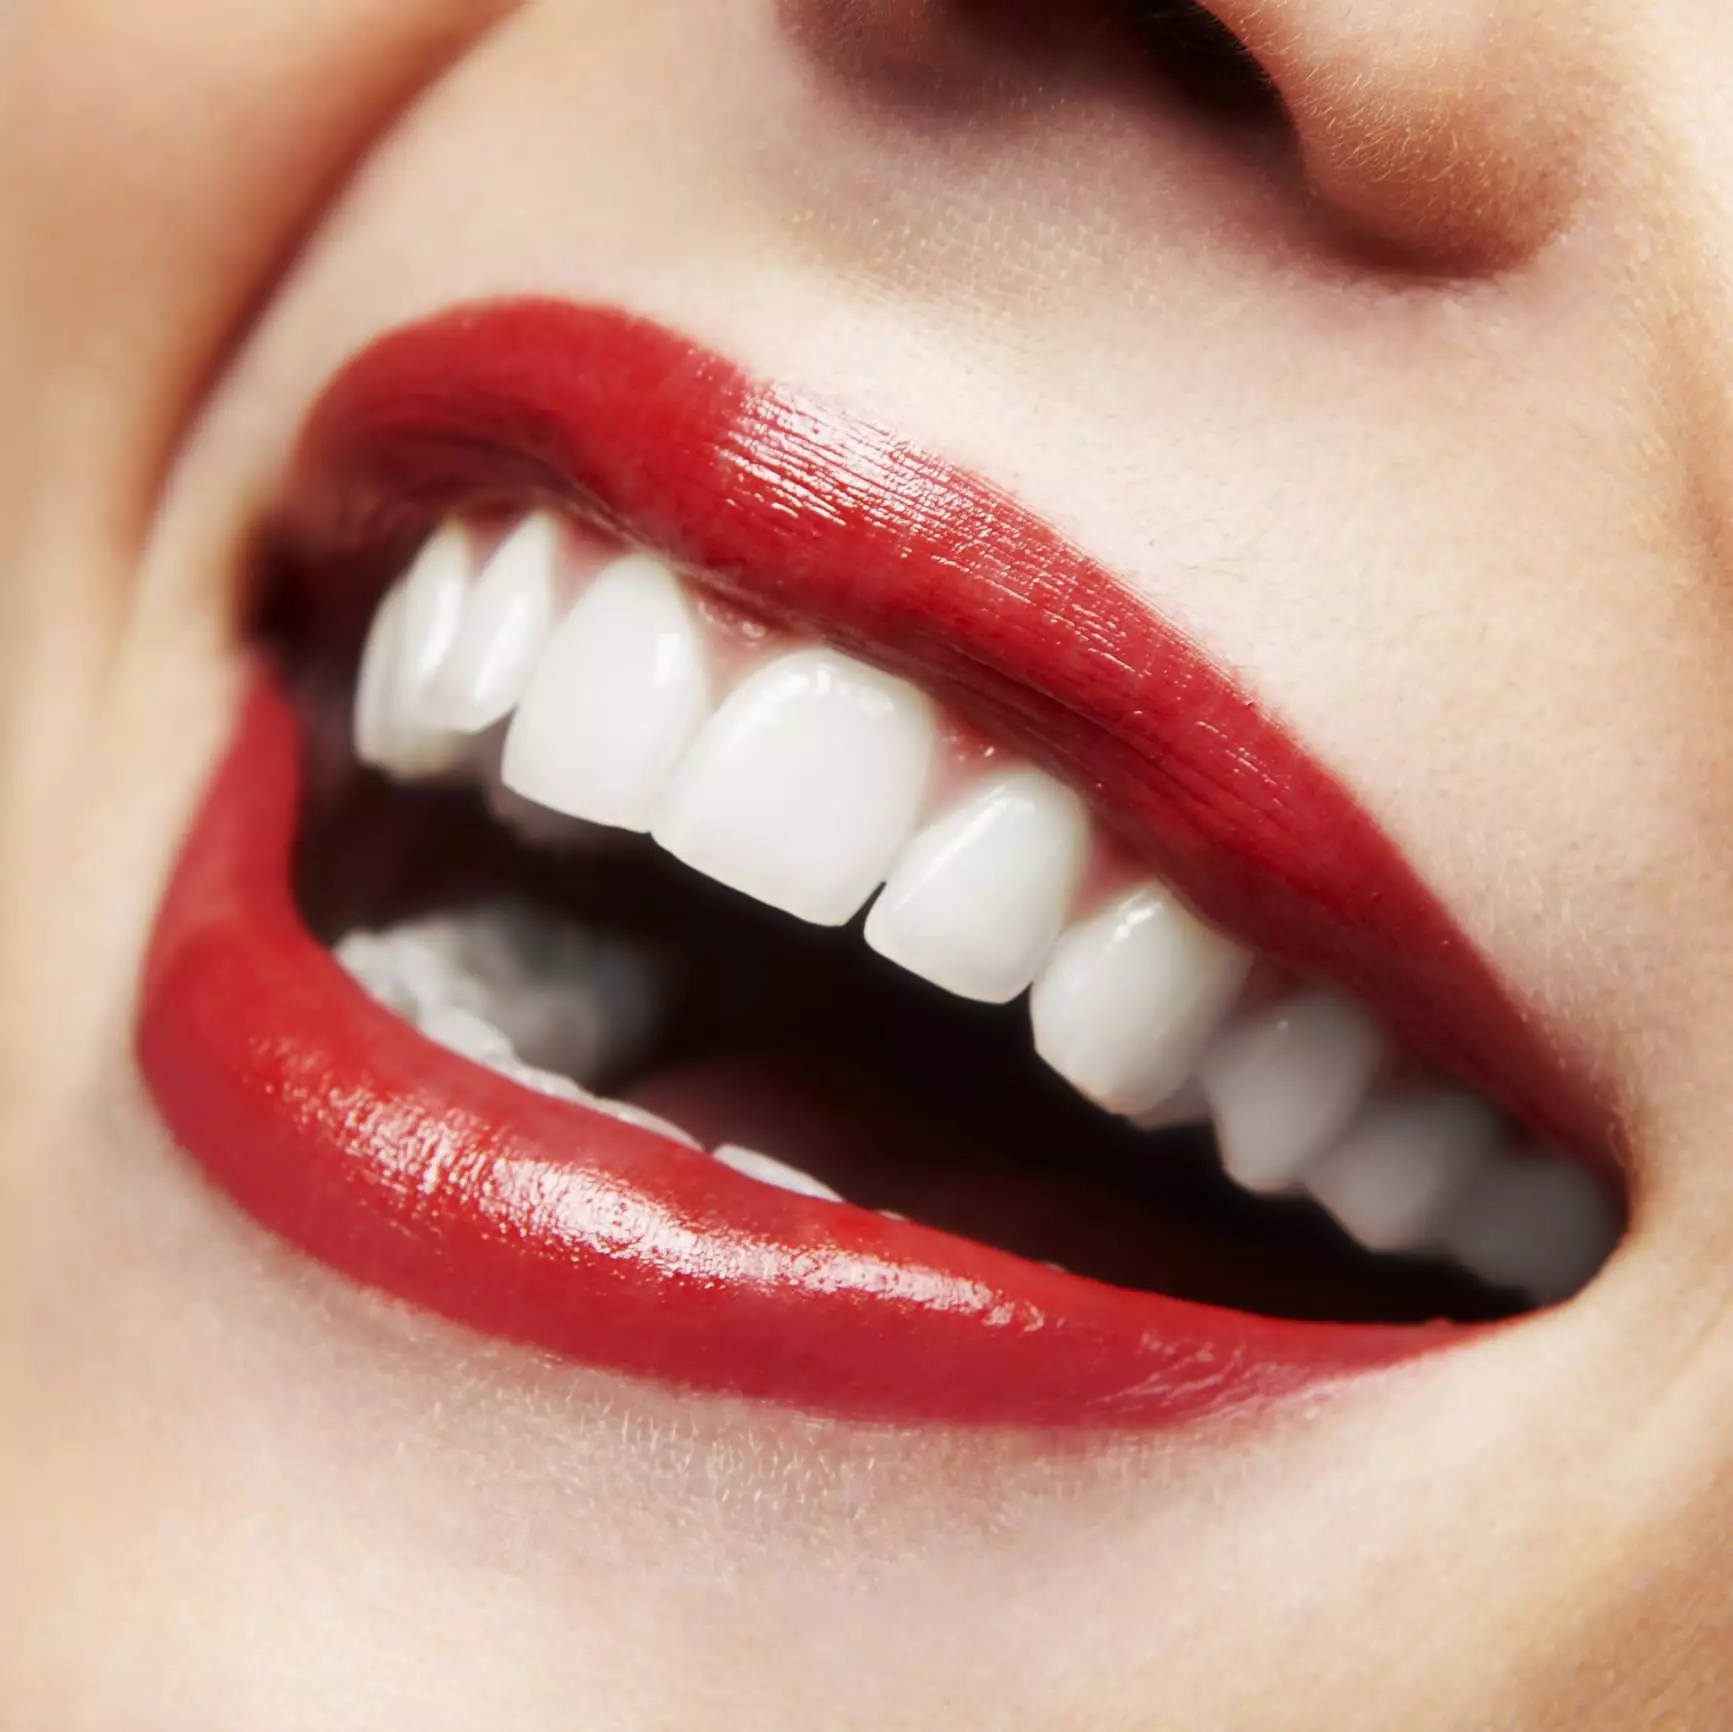 Powers Dental Greenway Dental: Paqijkirin û Paqijkirina Diranan, Danasîn Sharme Smile û Sharme Pearl, Berhevok 24049_3